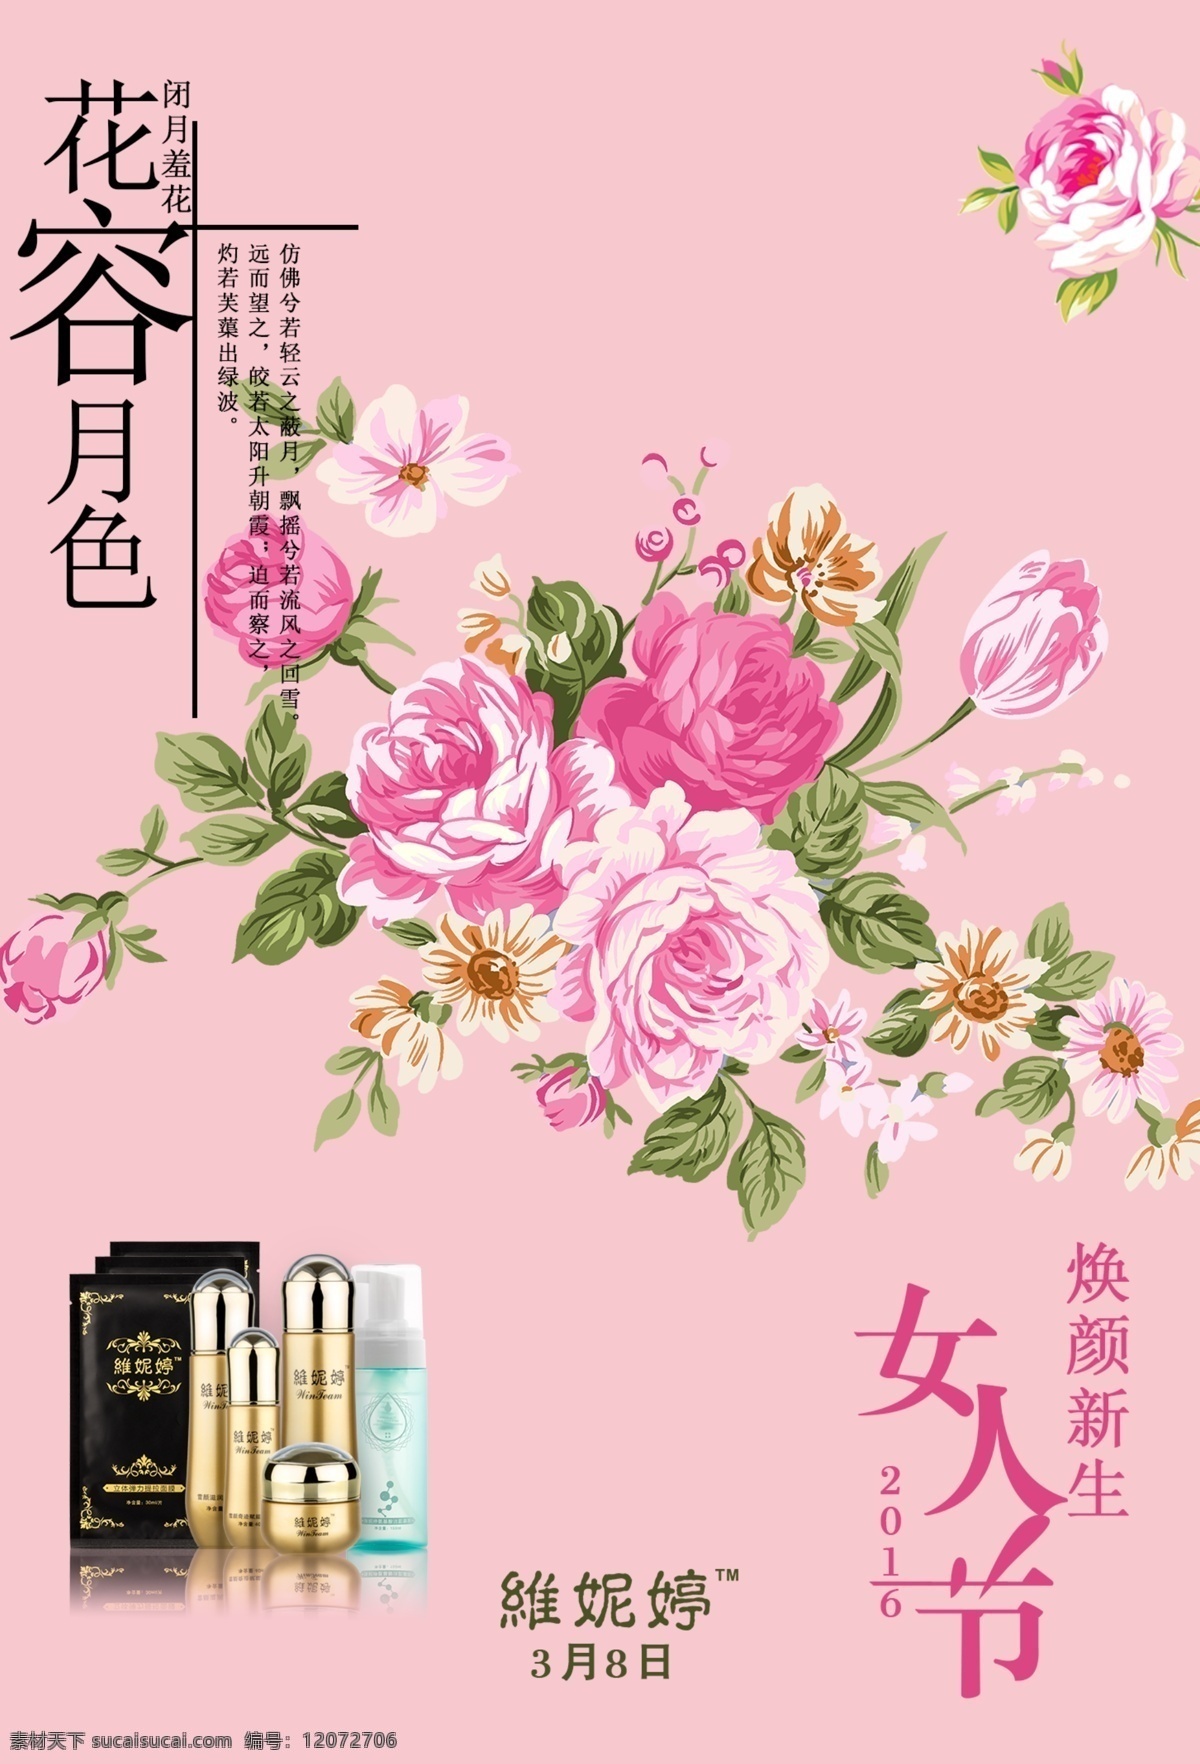 38妇女节 女人节 三八 化妆品宣传 花容月色 焕颜新生 节日